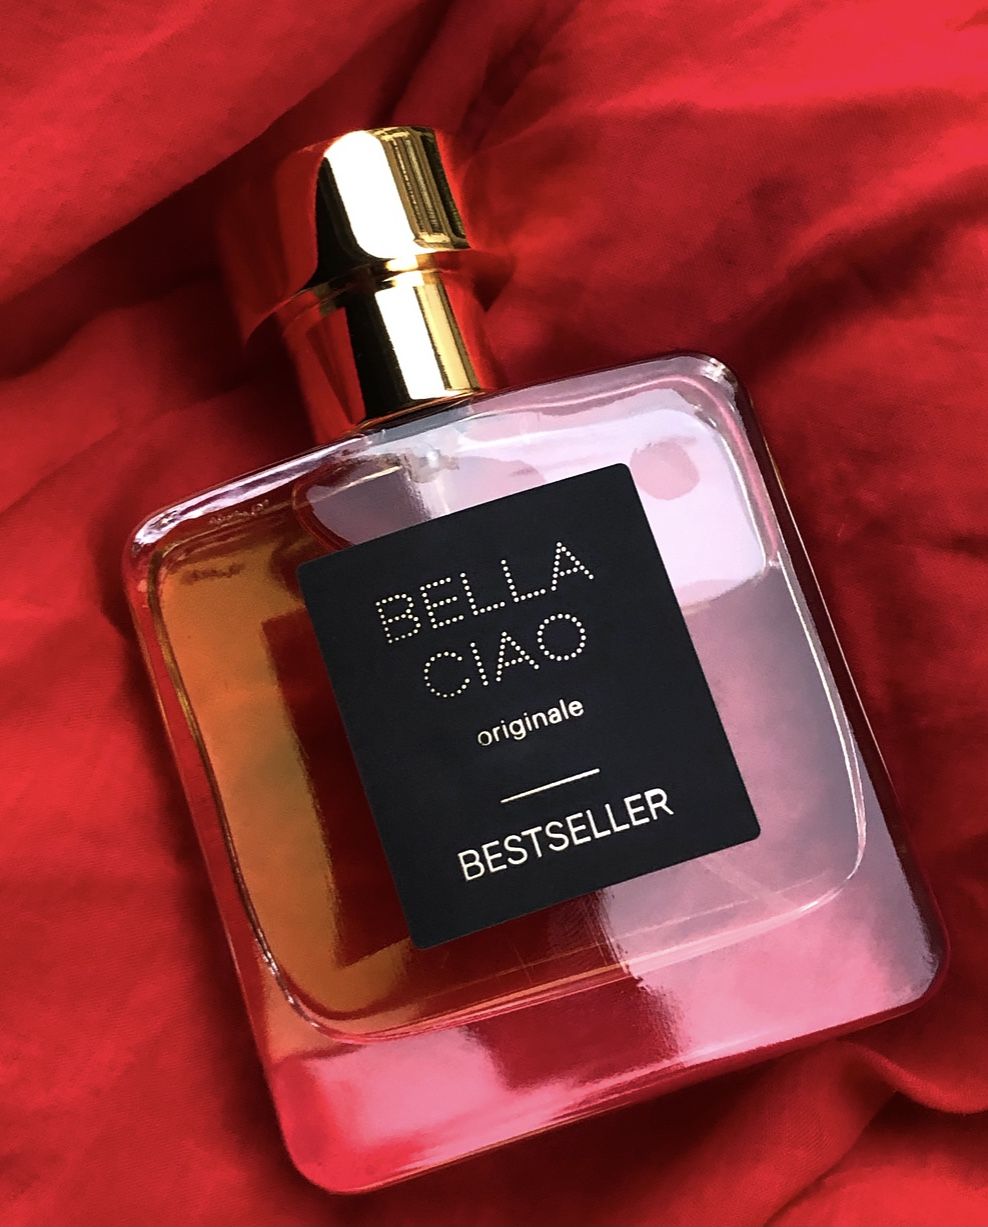 Jericho BESTSELLER Parfum ein neues Parfum für Frauen und